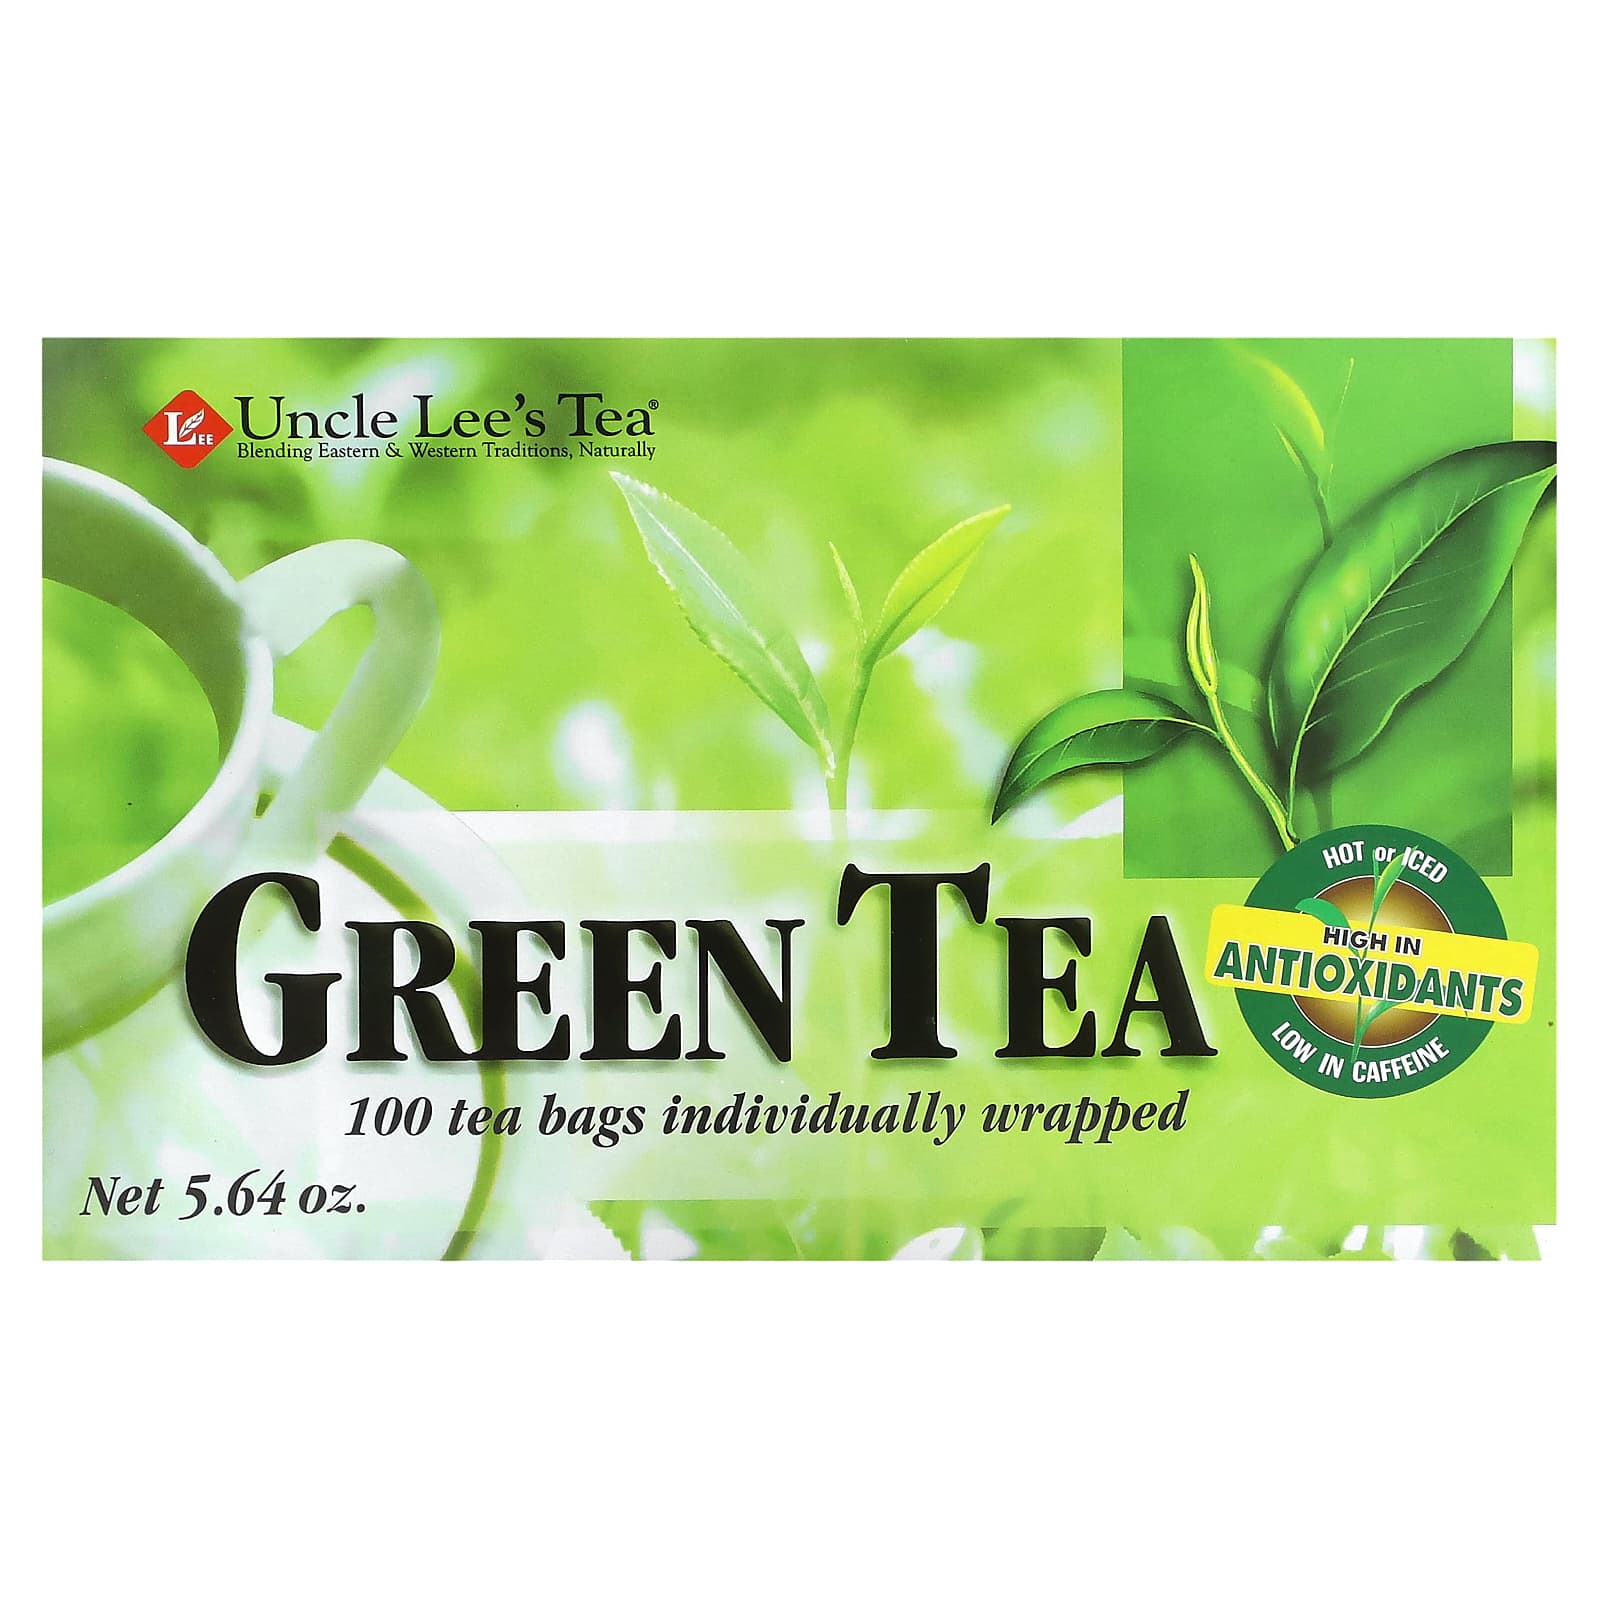 Yogi Tea Energía Té Verde 17 Bolsitas 【ENVIO 24 horas】